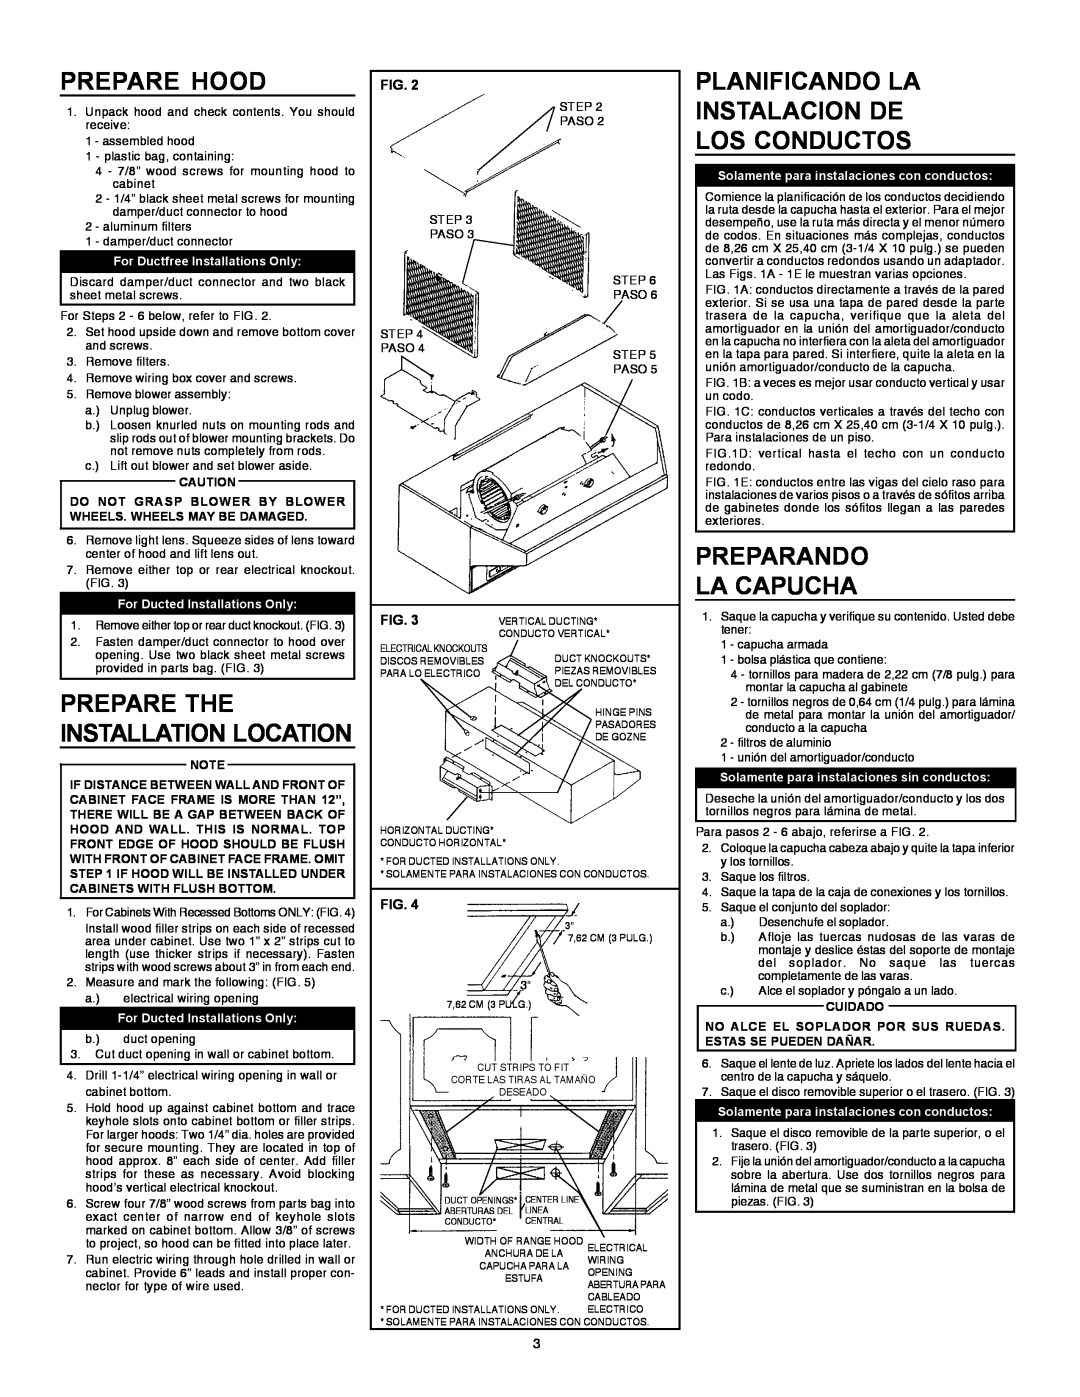 Broan 884804 installation instructions Prepare Hood, Planificando La Instalacion De Los Conductos, Preparando La Capucha 